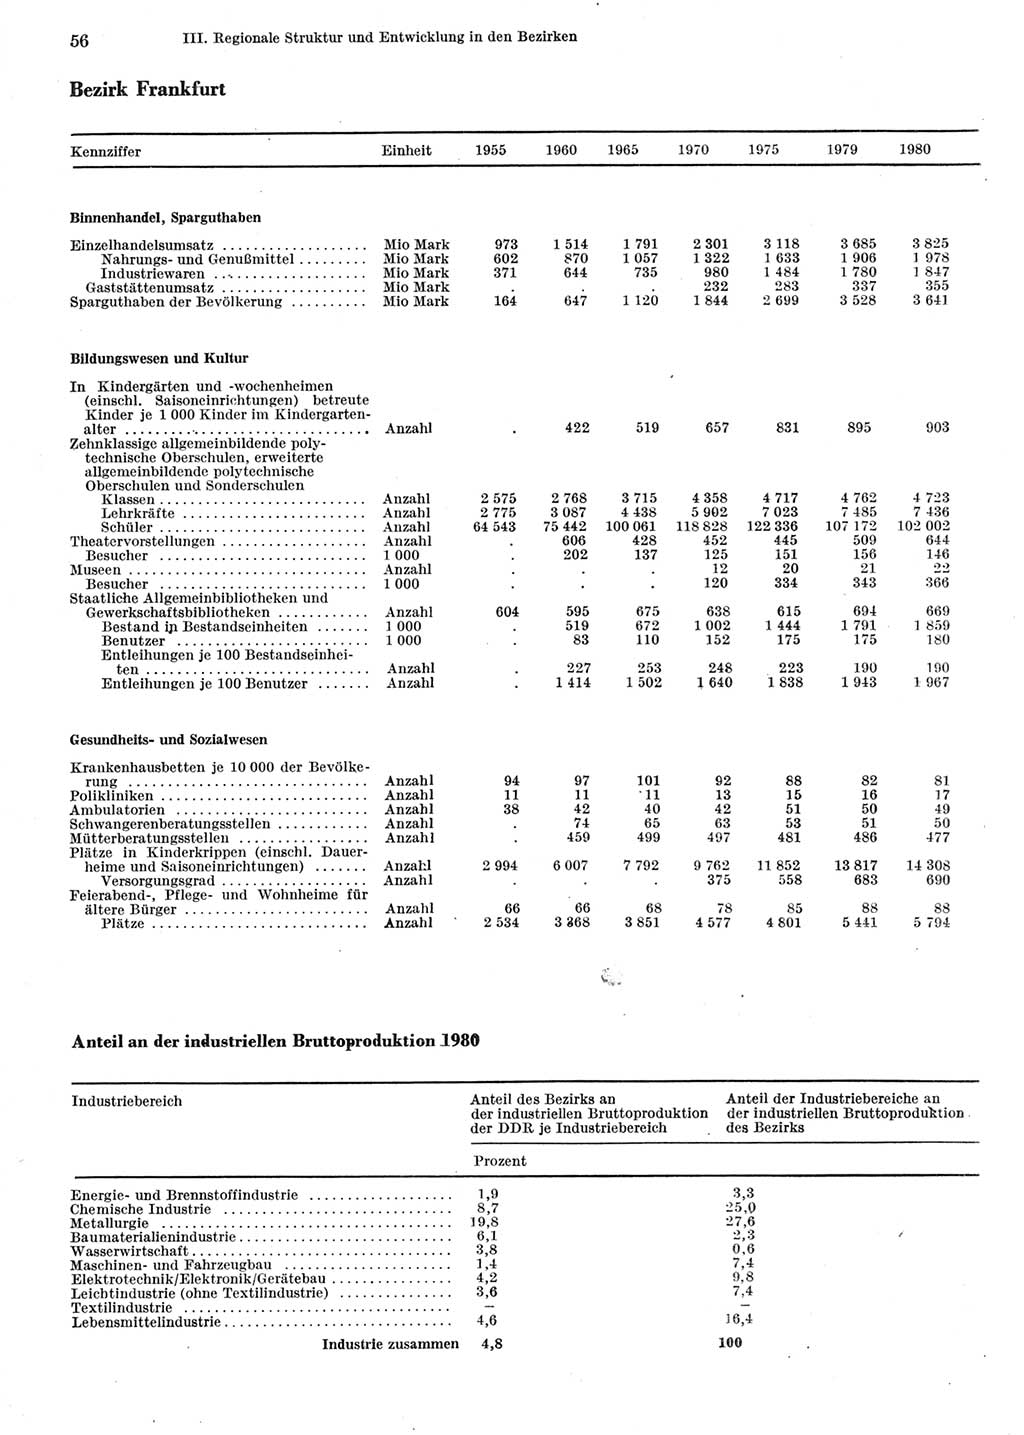 Statistisches Jahrbuch der Deutschen Demokratischen Republik (DDR) 1981, Seite 56 (Stat. Jb. DDR 1981, S. 56)